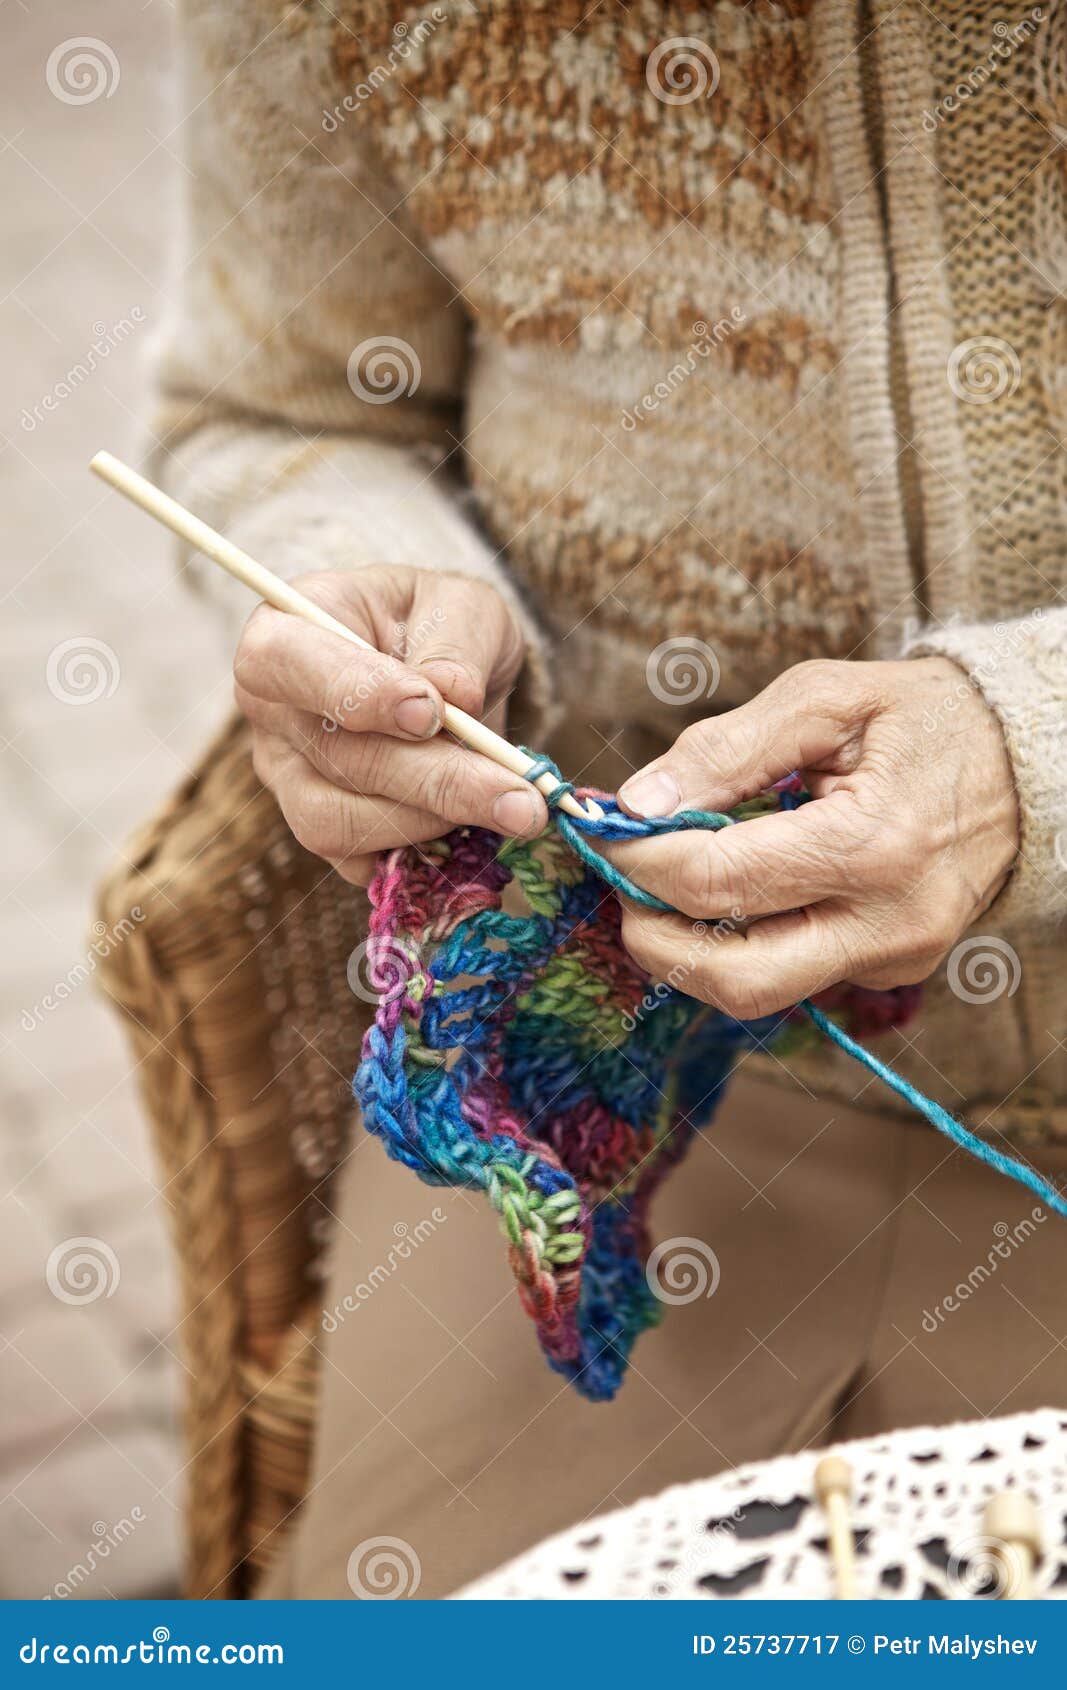 Knitting hands. Вязание в руках старушки. Пожилая женщина вяжет. Руки старушки вяжут. Пожилая дама вяжет.